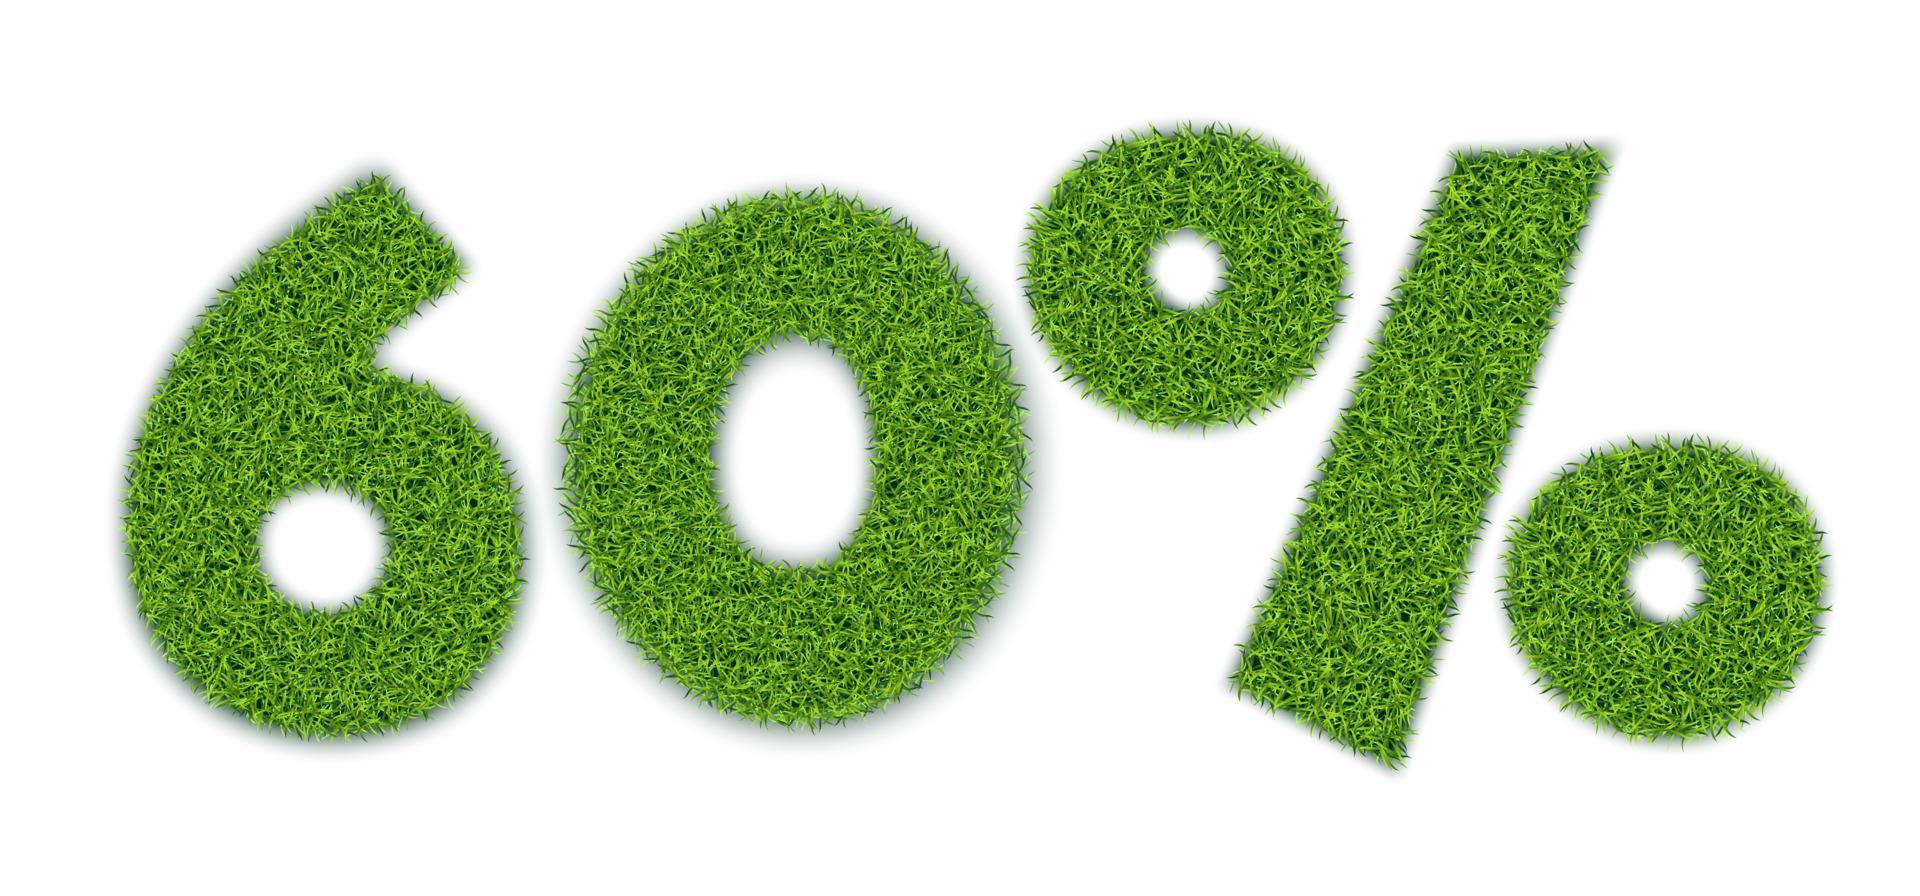 60 por ciento de formas con textura de hierba de jardín. venta de temporada. pancarta para publicidad. estilo realista 3d. separar sobre un fondo blanco. vector. vector